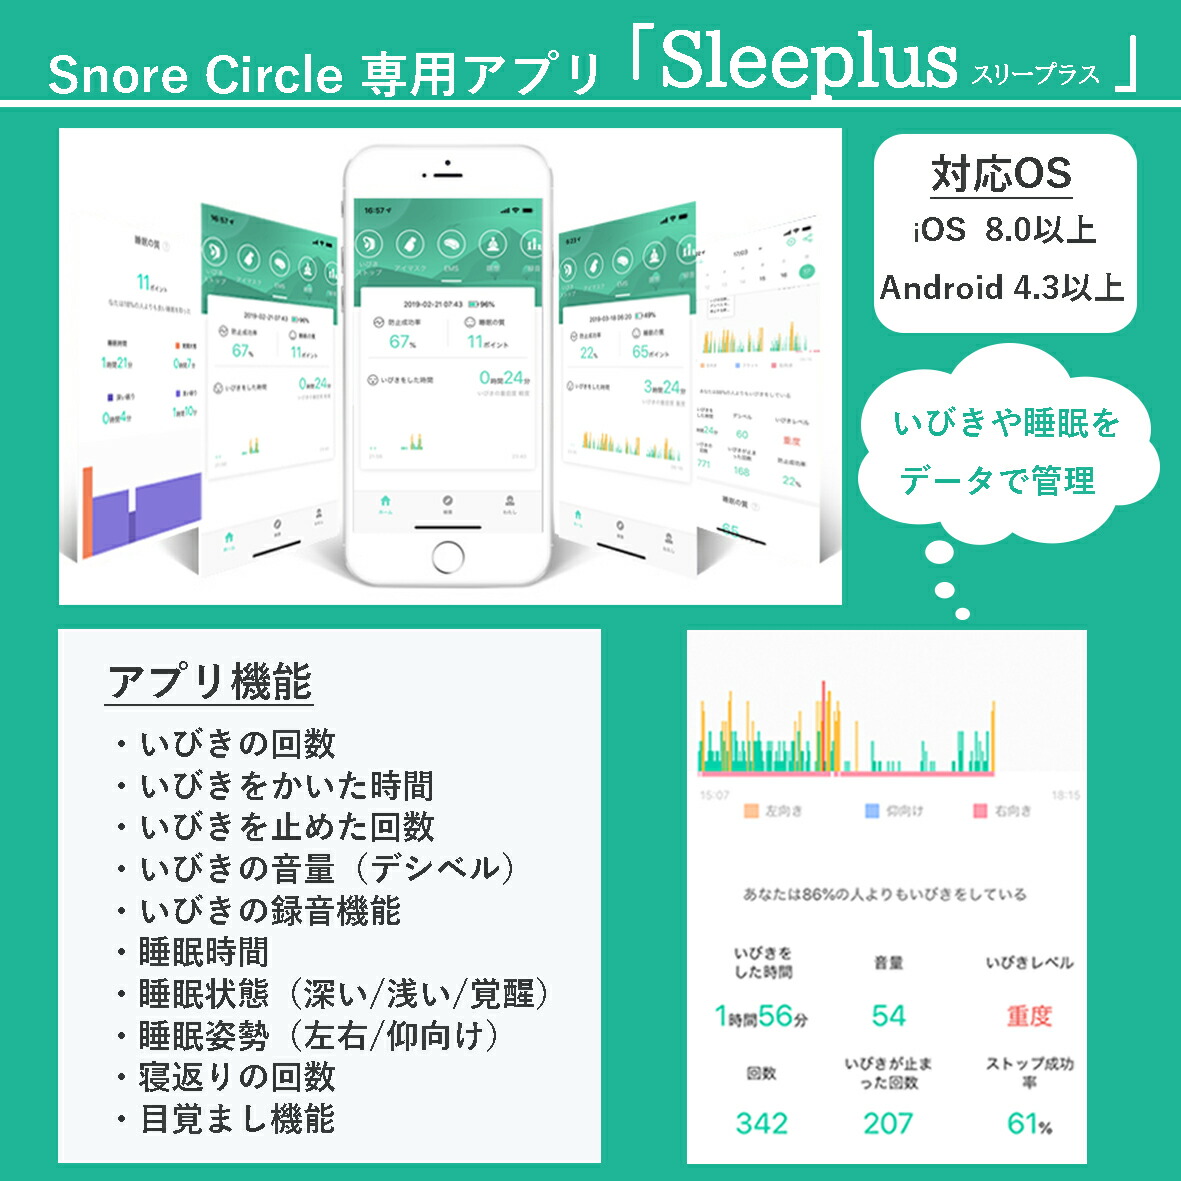 スノアサークル EMS – Snore Circle｜スノアサークル日本公式サイト